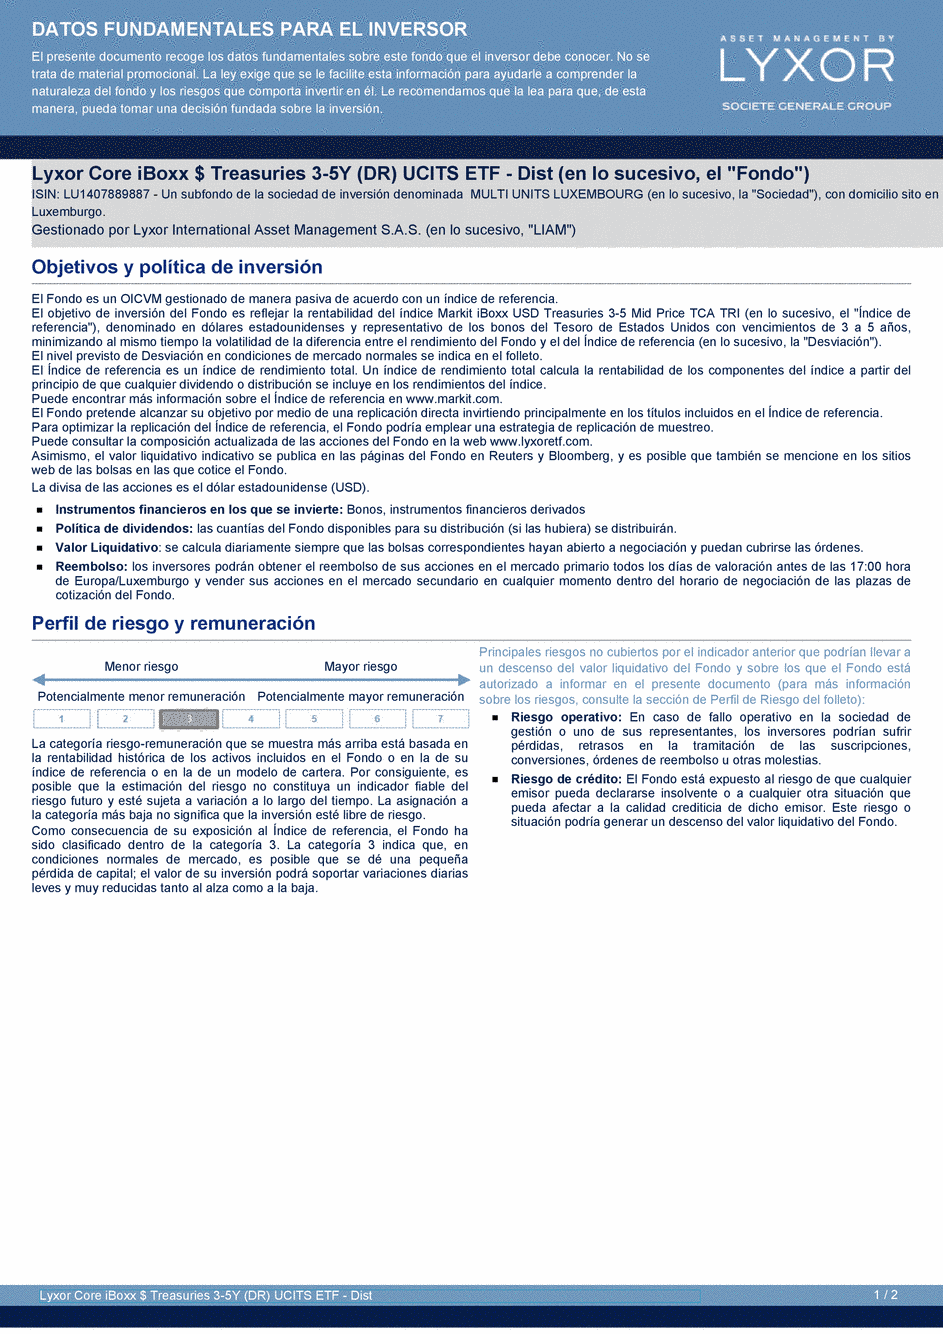 DICI Lyxor Core iBoxx $ Treasuries 3-5Y (DR) UCITS ETF - Dist - 14/02/2020 - Espagnol